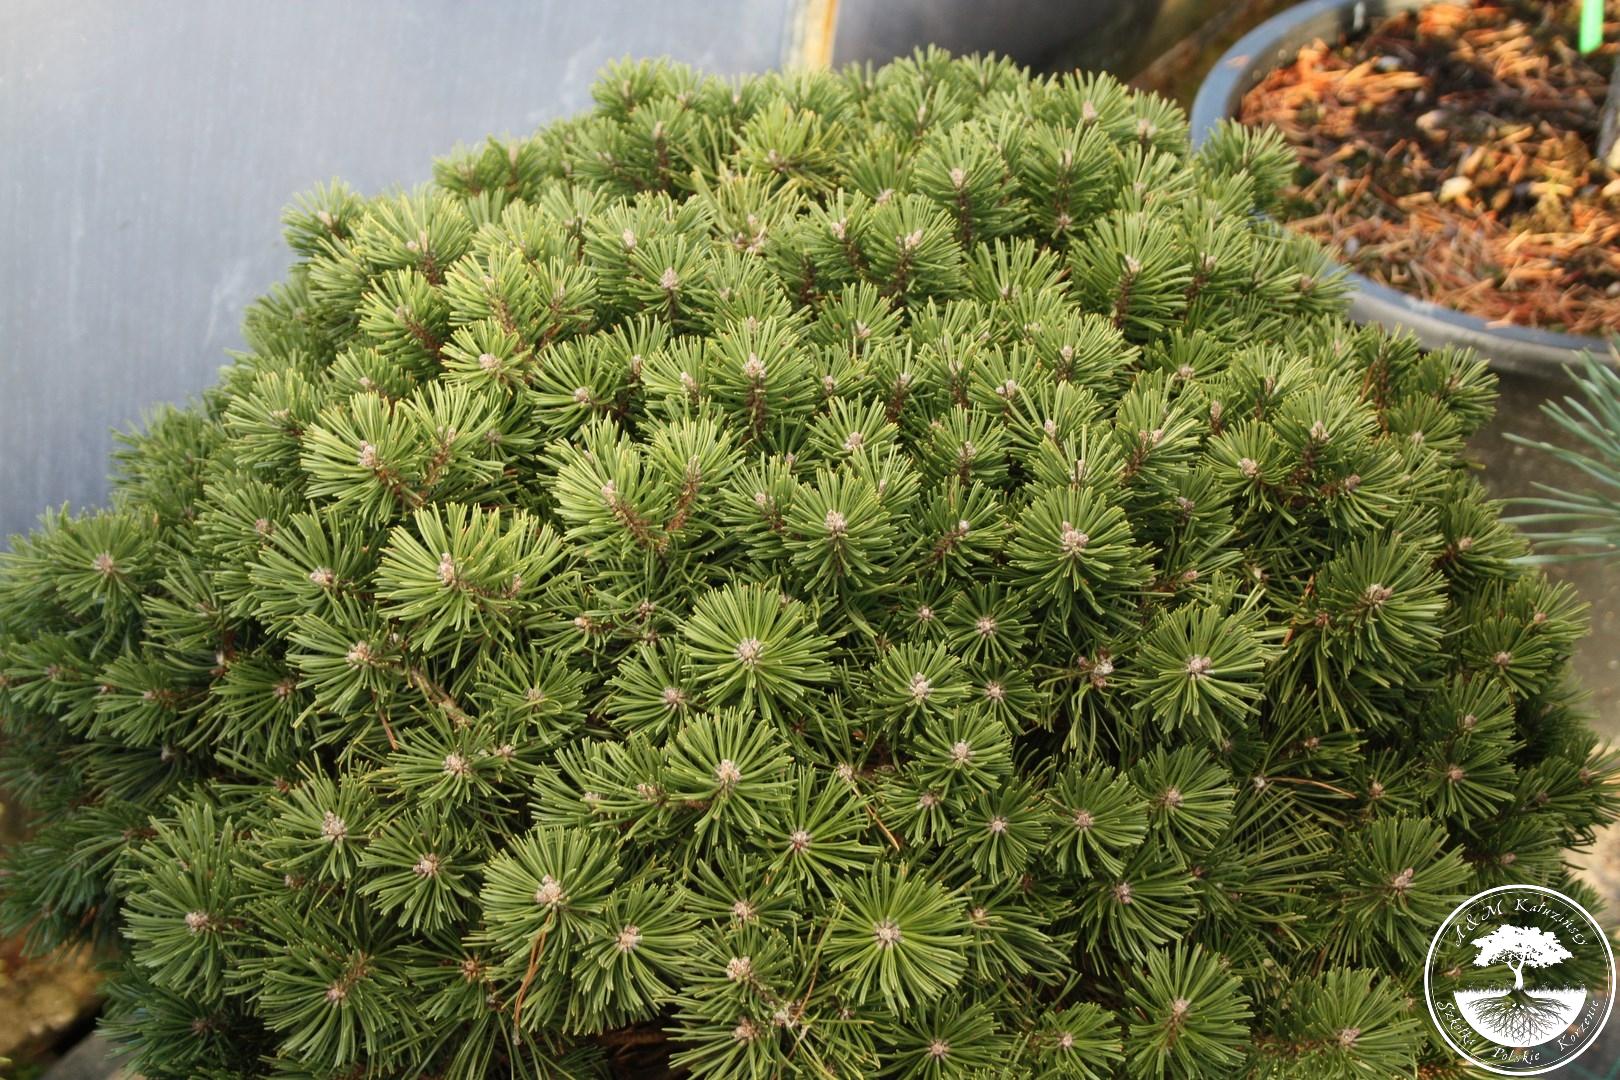 Хвойные недорого. Pinus mugo 'Saturn'. Варелла Pinus mugo. Pinus mugo Saturn сосна. Сосна Горная Пинус Муго Хампи.